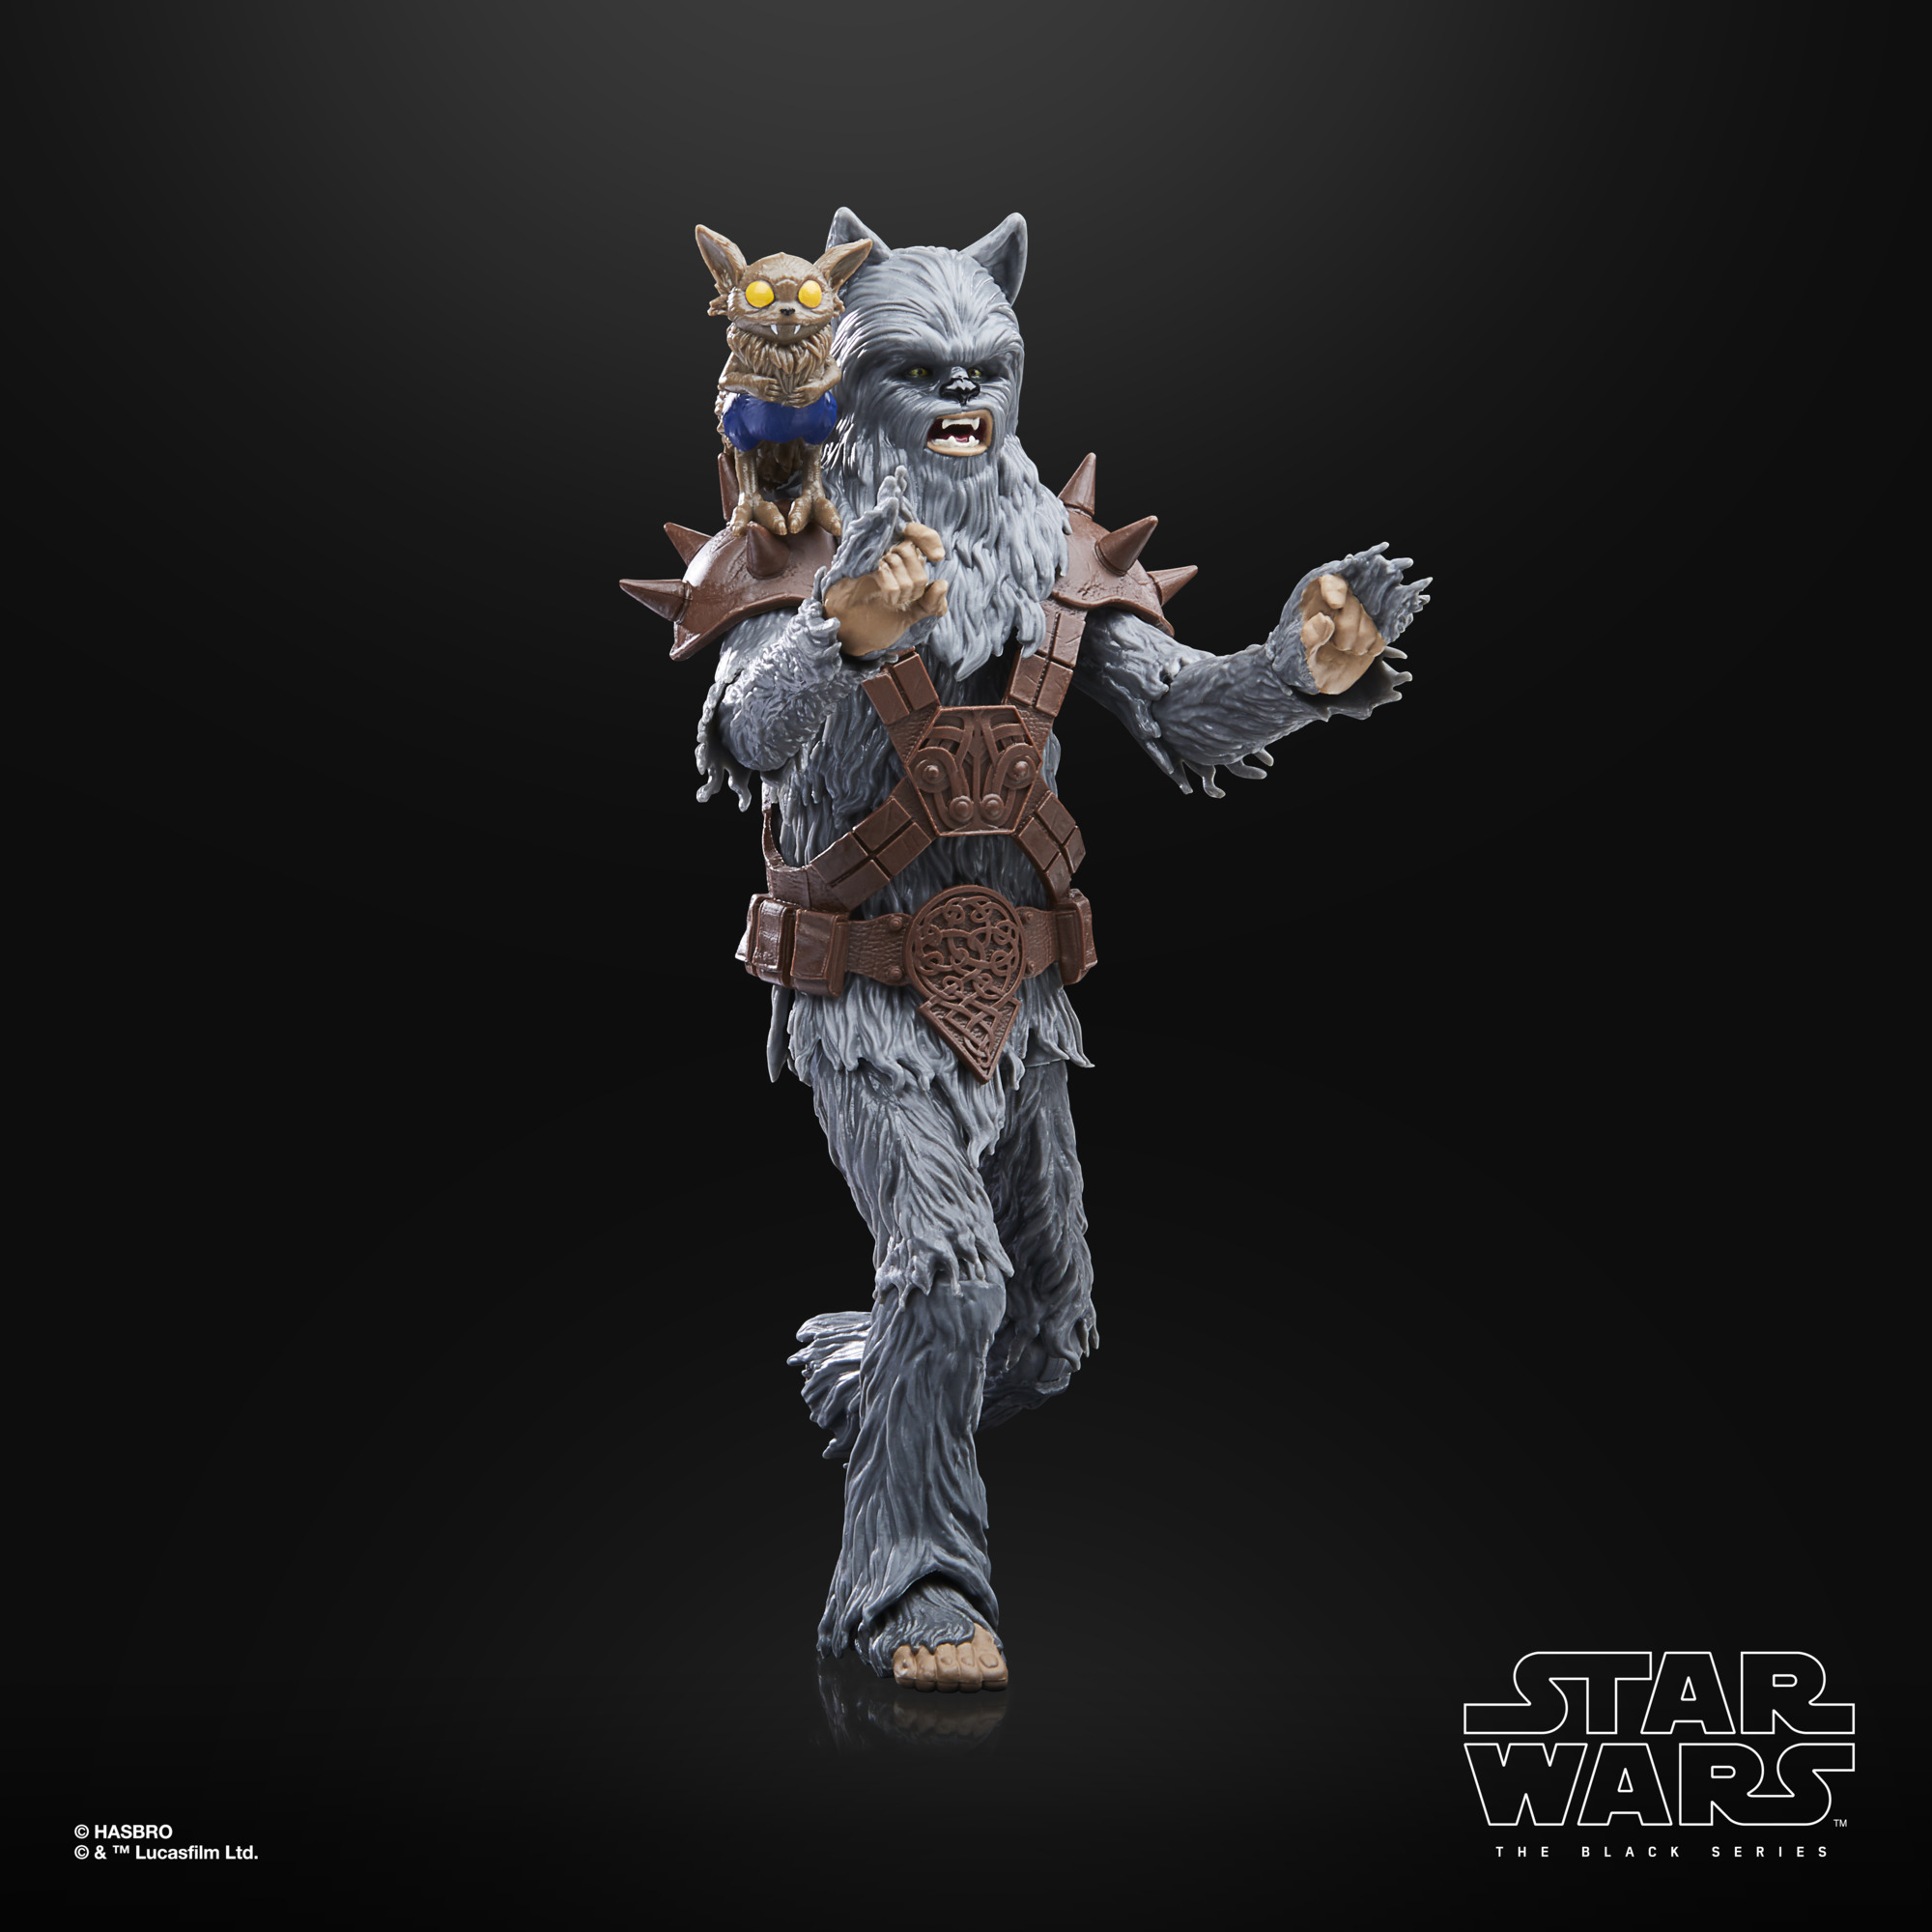 Star Wars The Black Series Wookiee (Halloween Edition) F56095L0 5010994167028